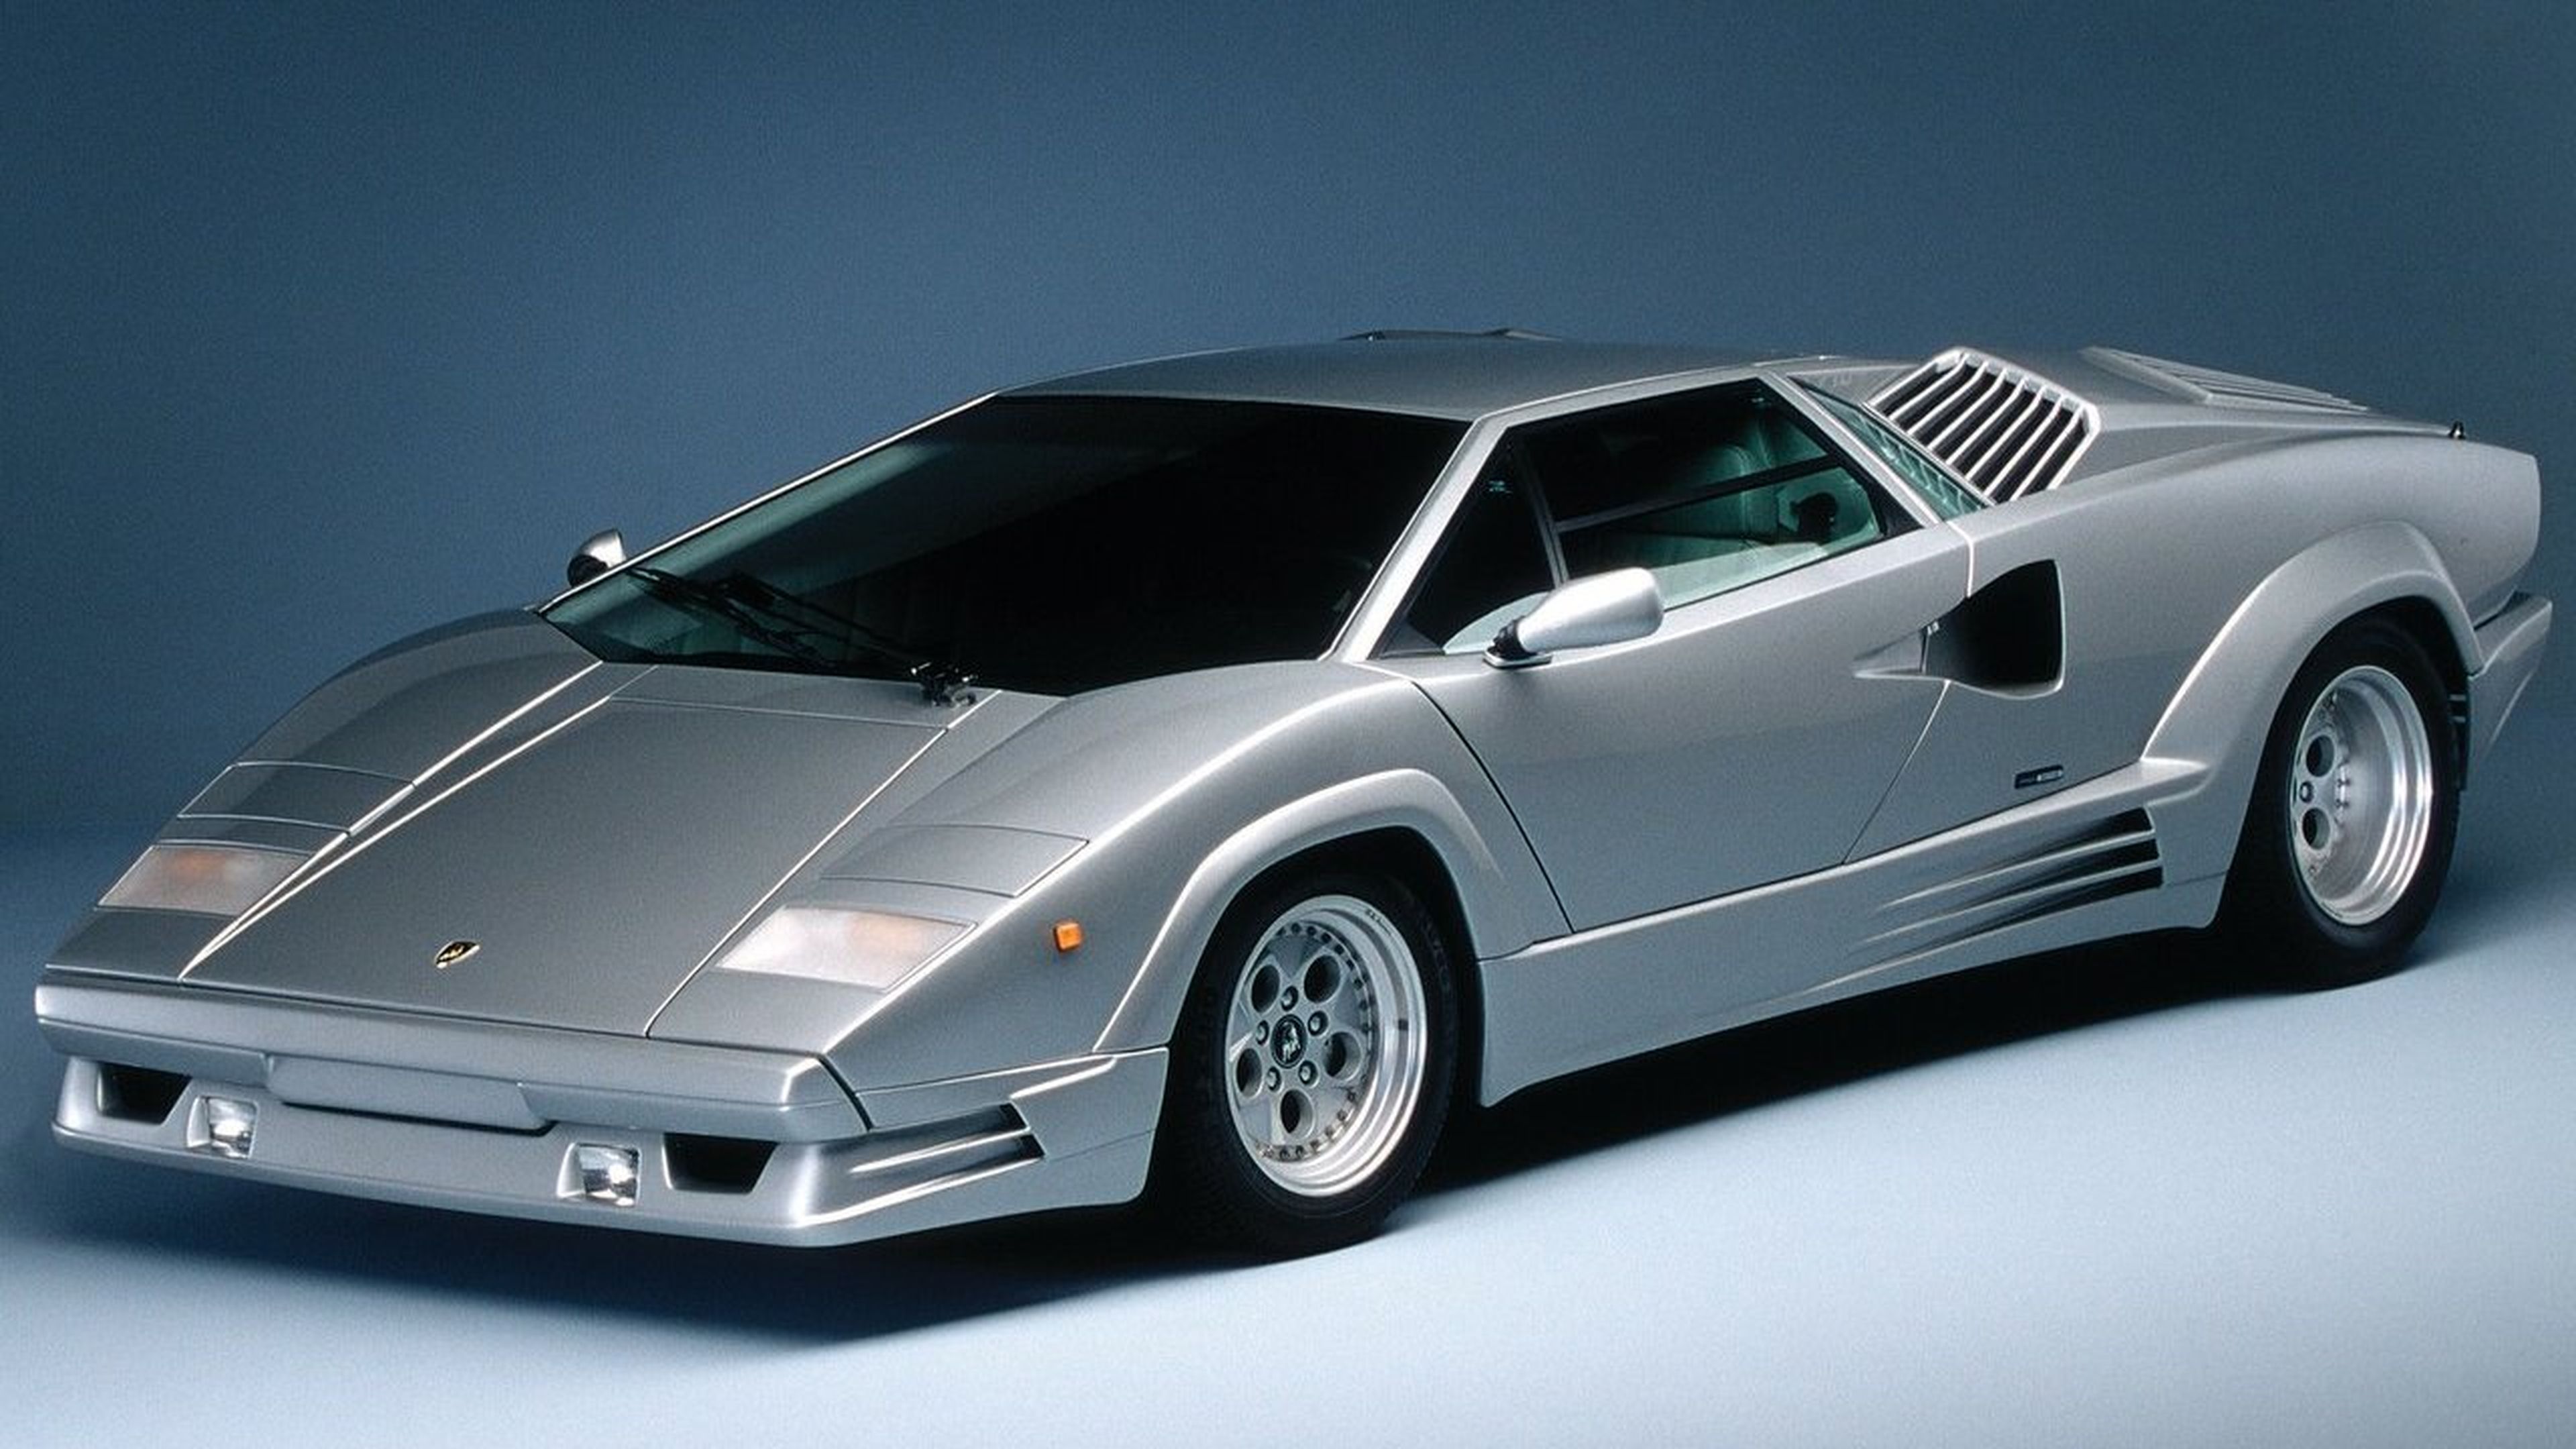 Lamborghini Countach 25th Anniversary (1988)